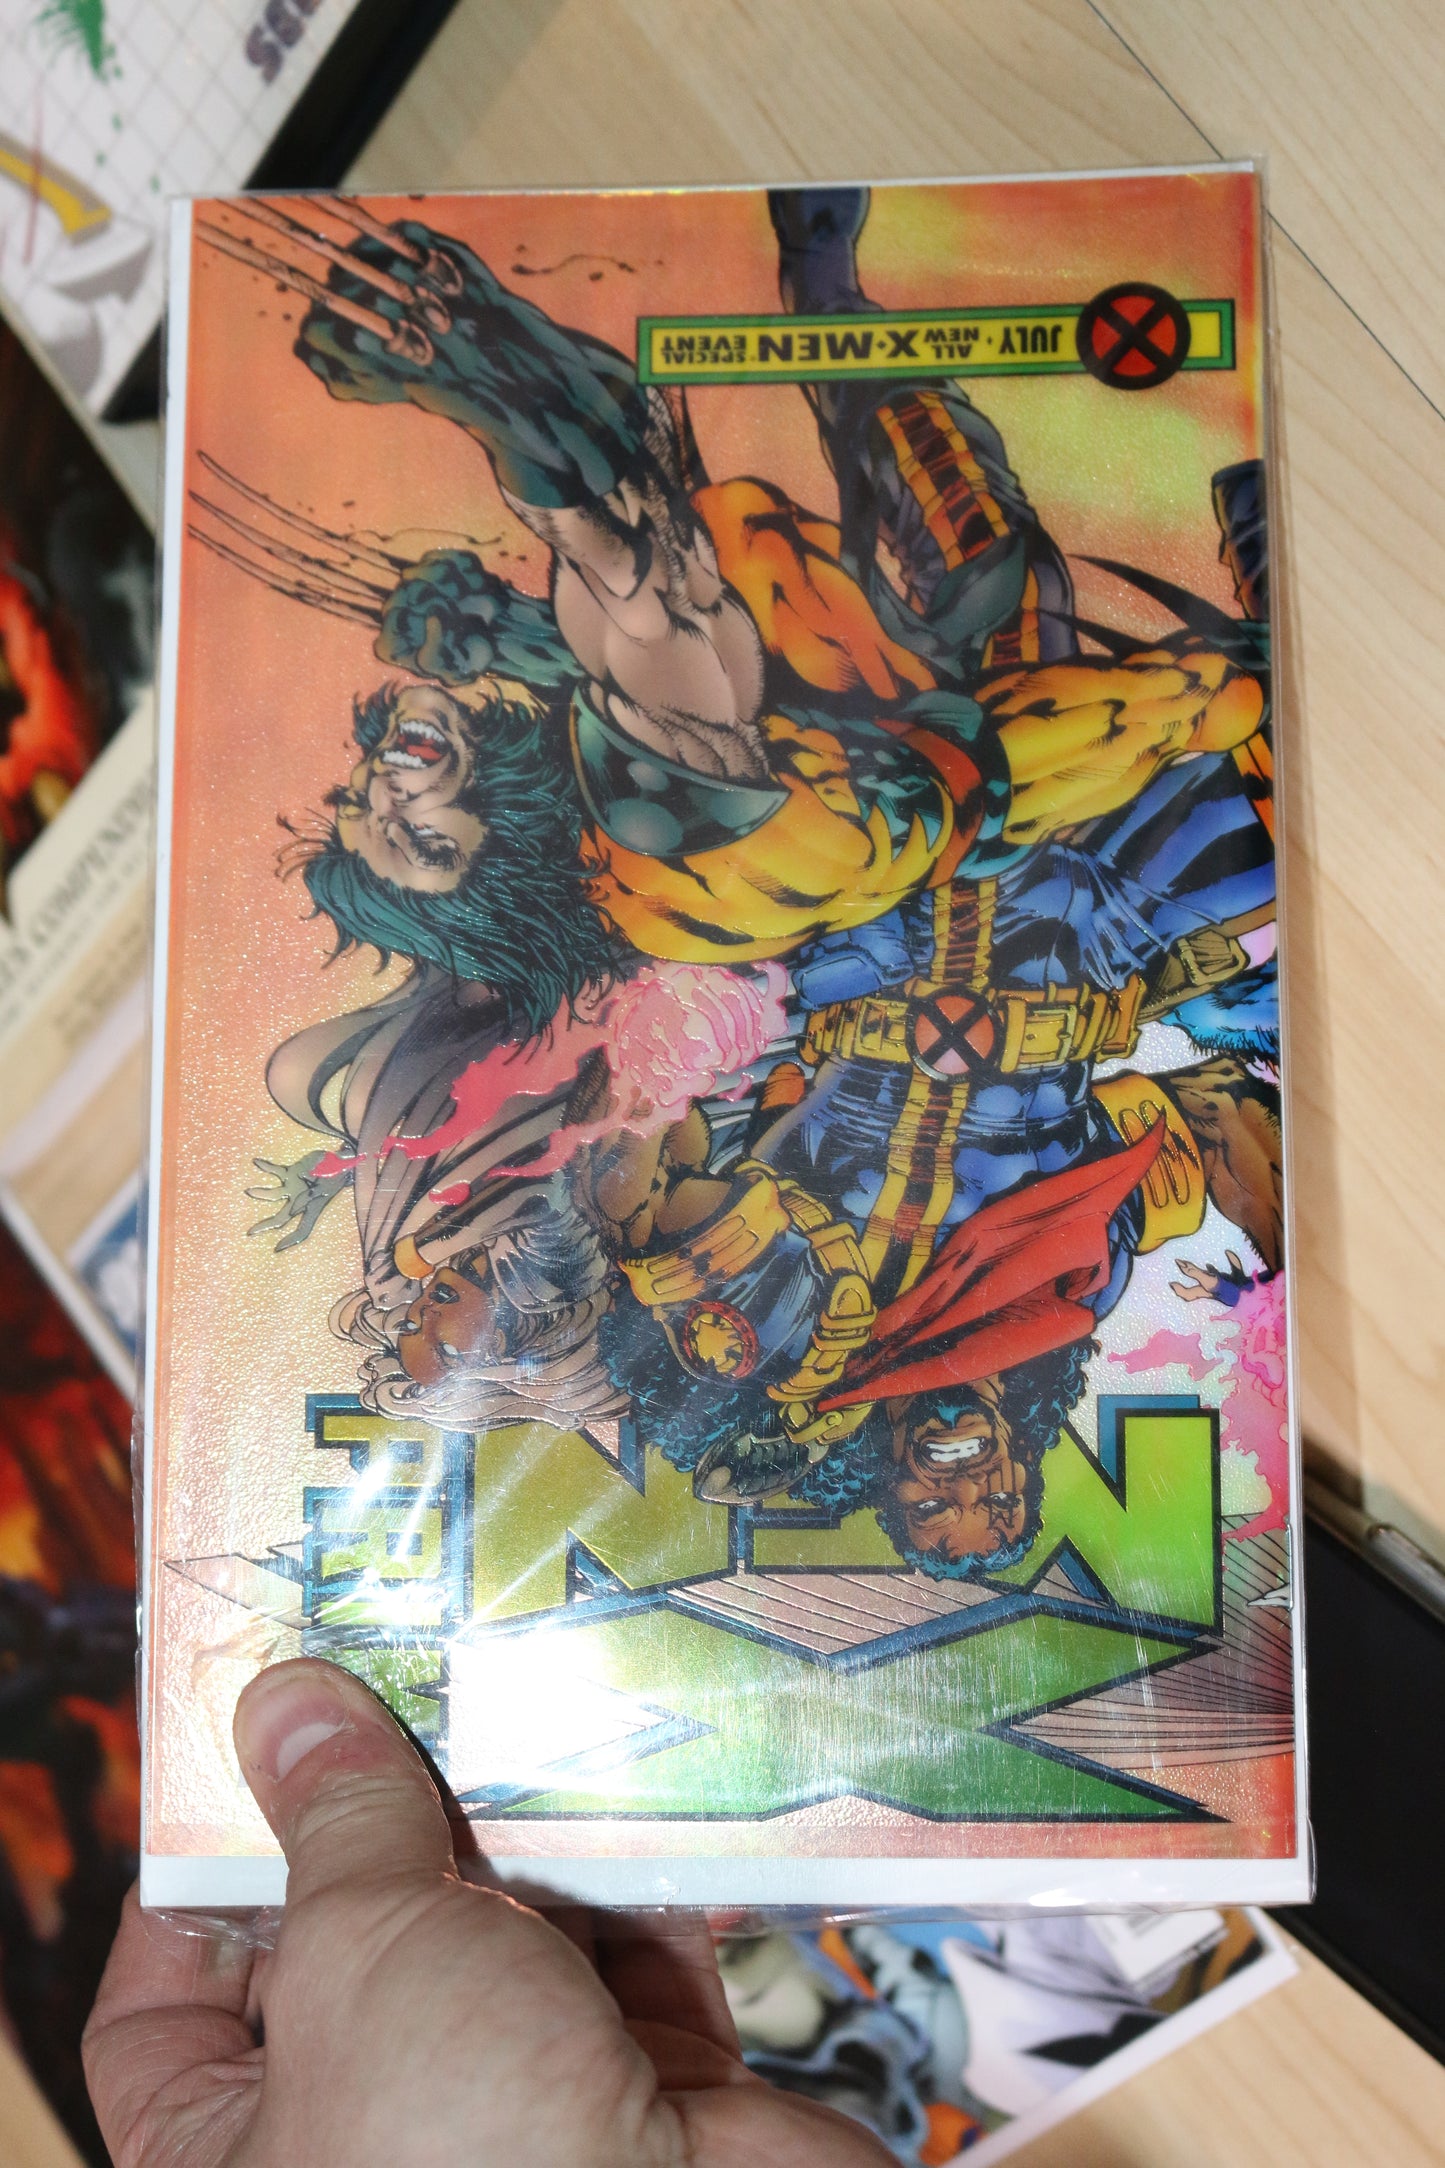 Marvel X-Men Prime #1 Issue July 1995 All New X-Men